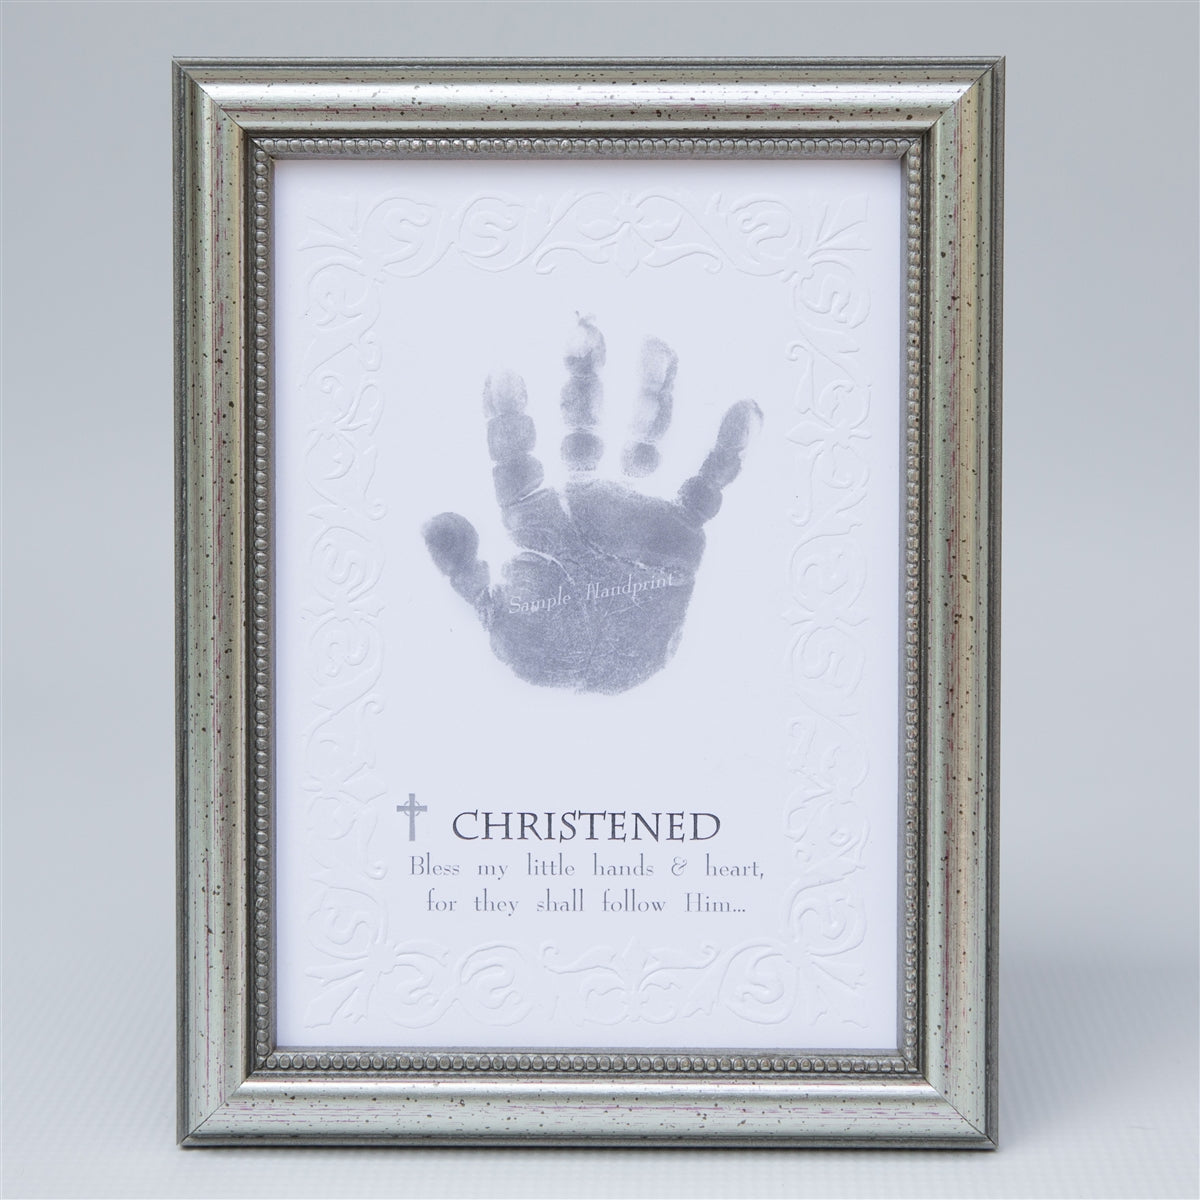 Christened handprint keepsake in elegant frame in silver with embossed beaded design.